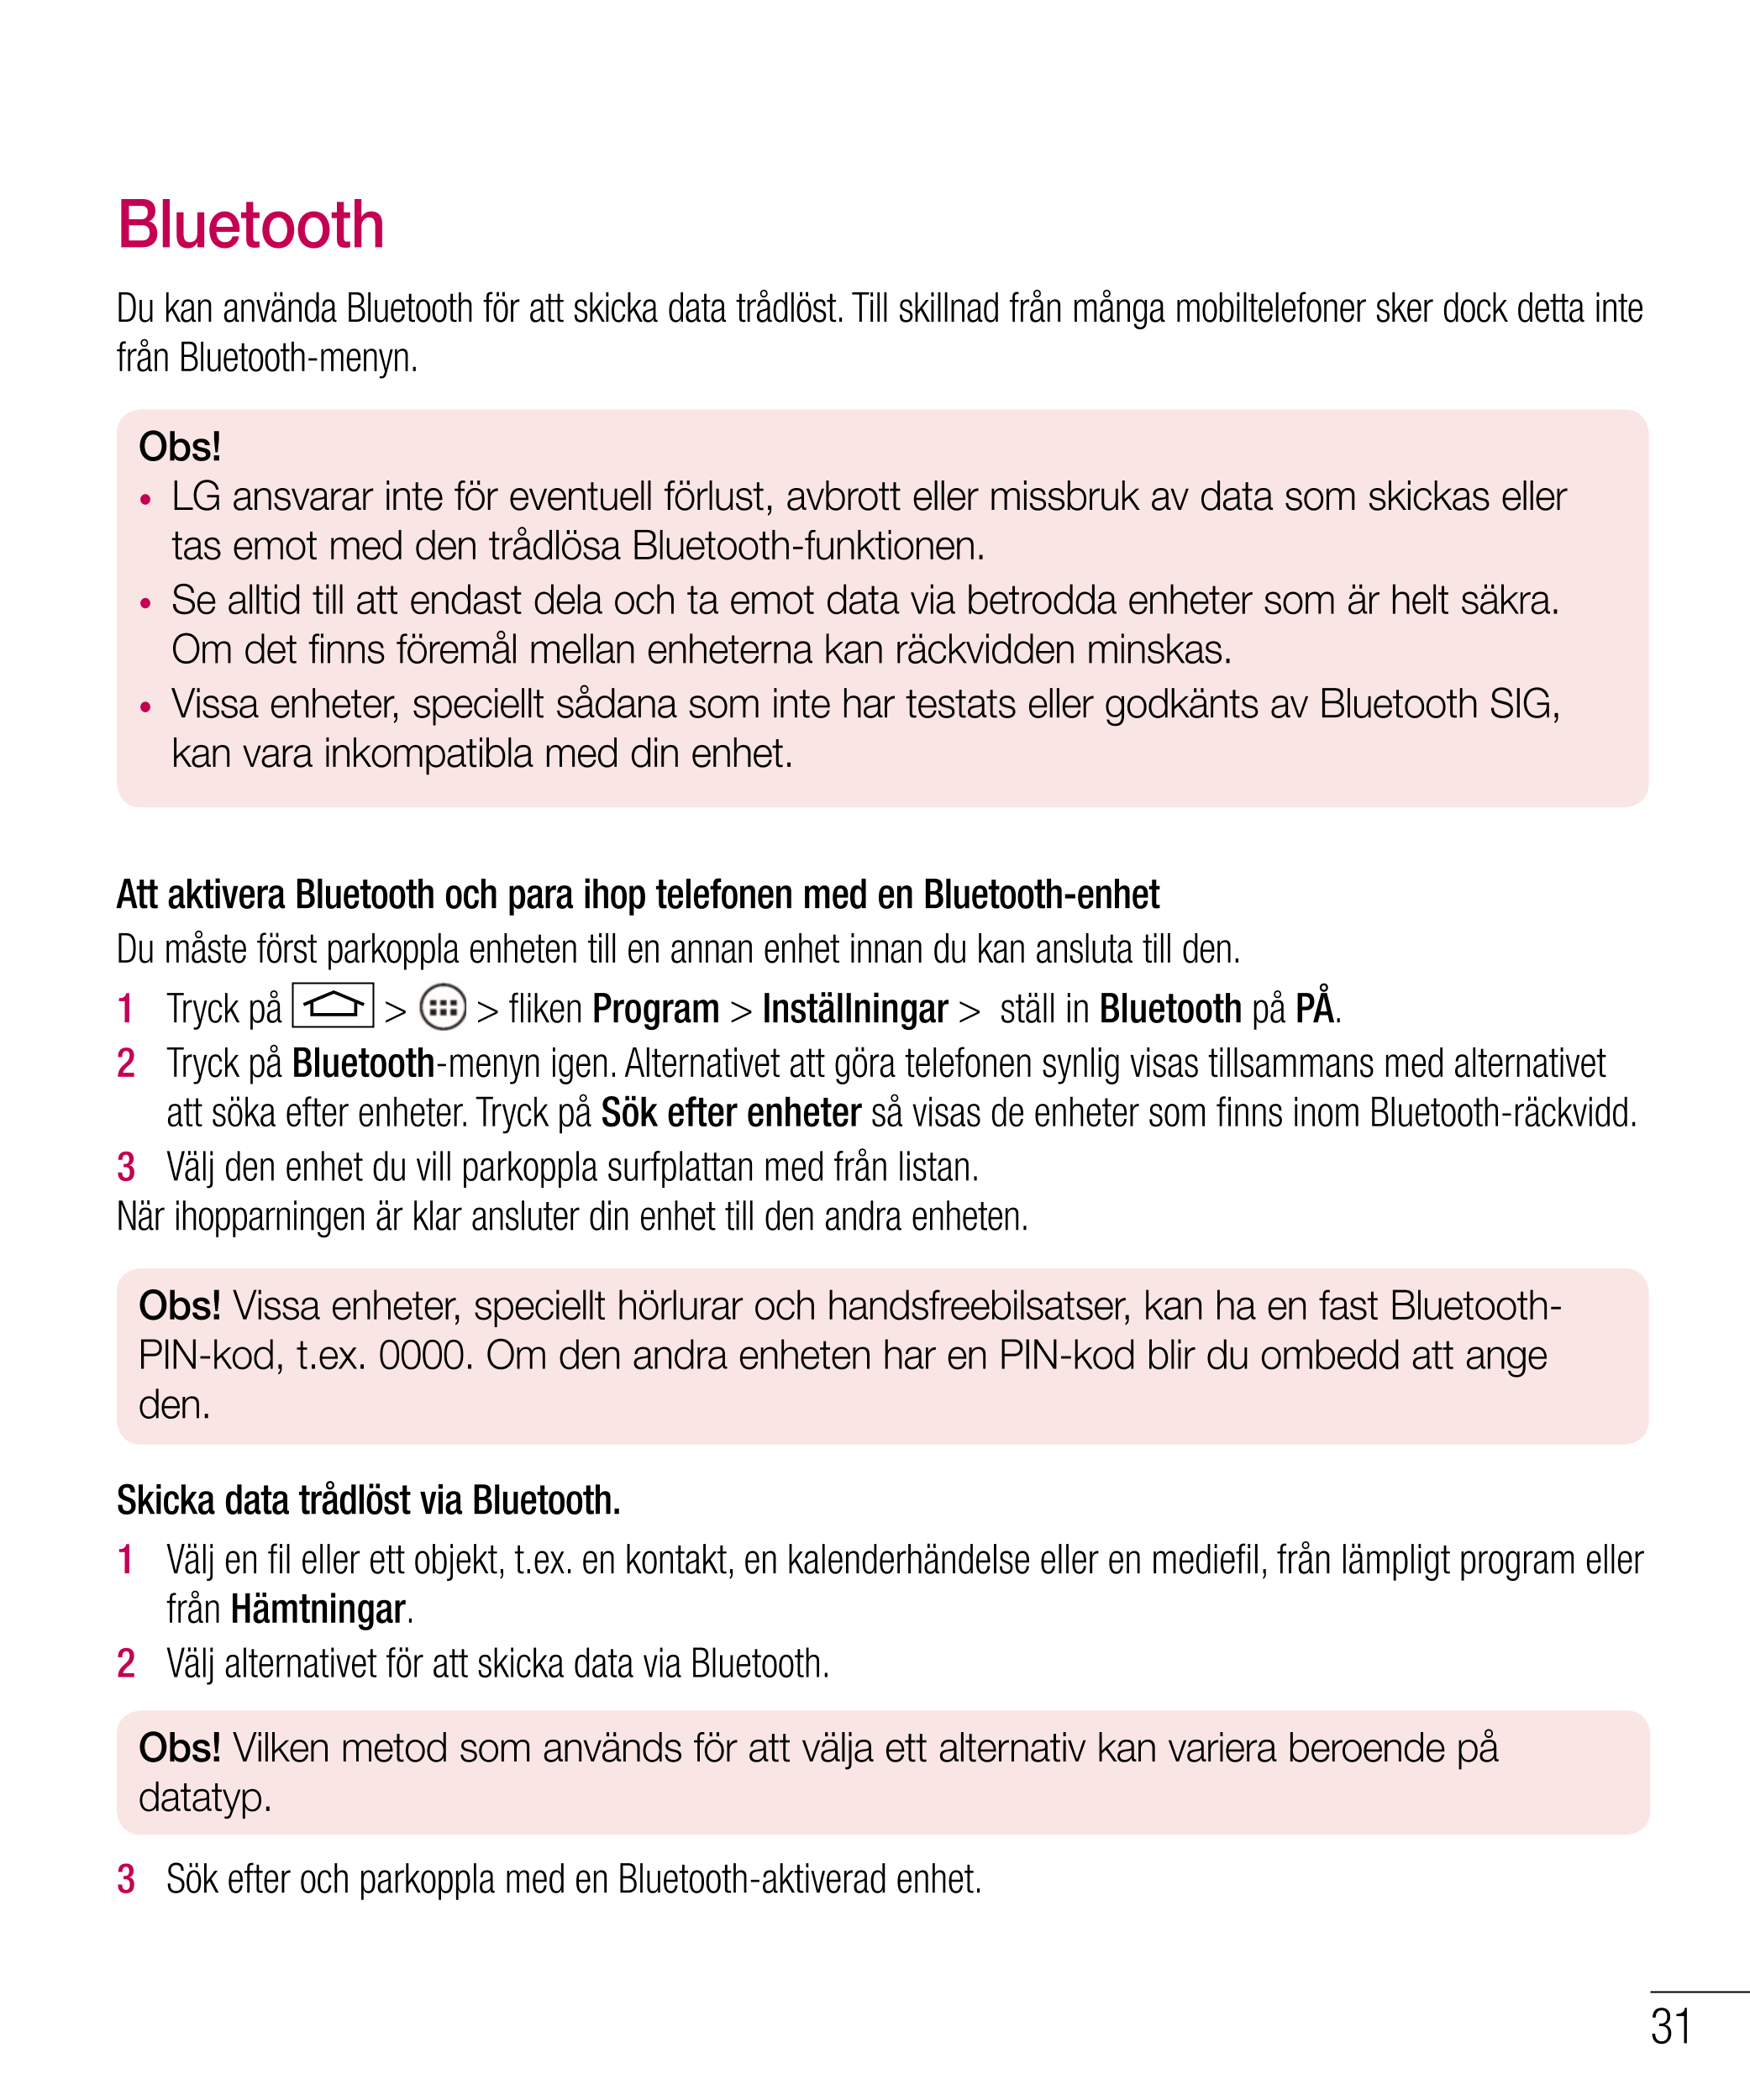 Bluetooth
Du kan använda Bluetooth för att skicka data trådlöst. Till skillnad från många mobiltelefoner sker dock detta inte 
f